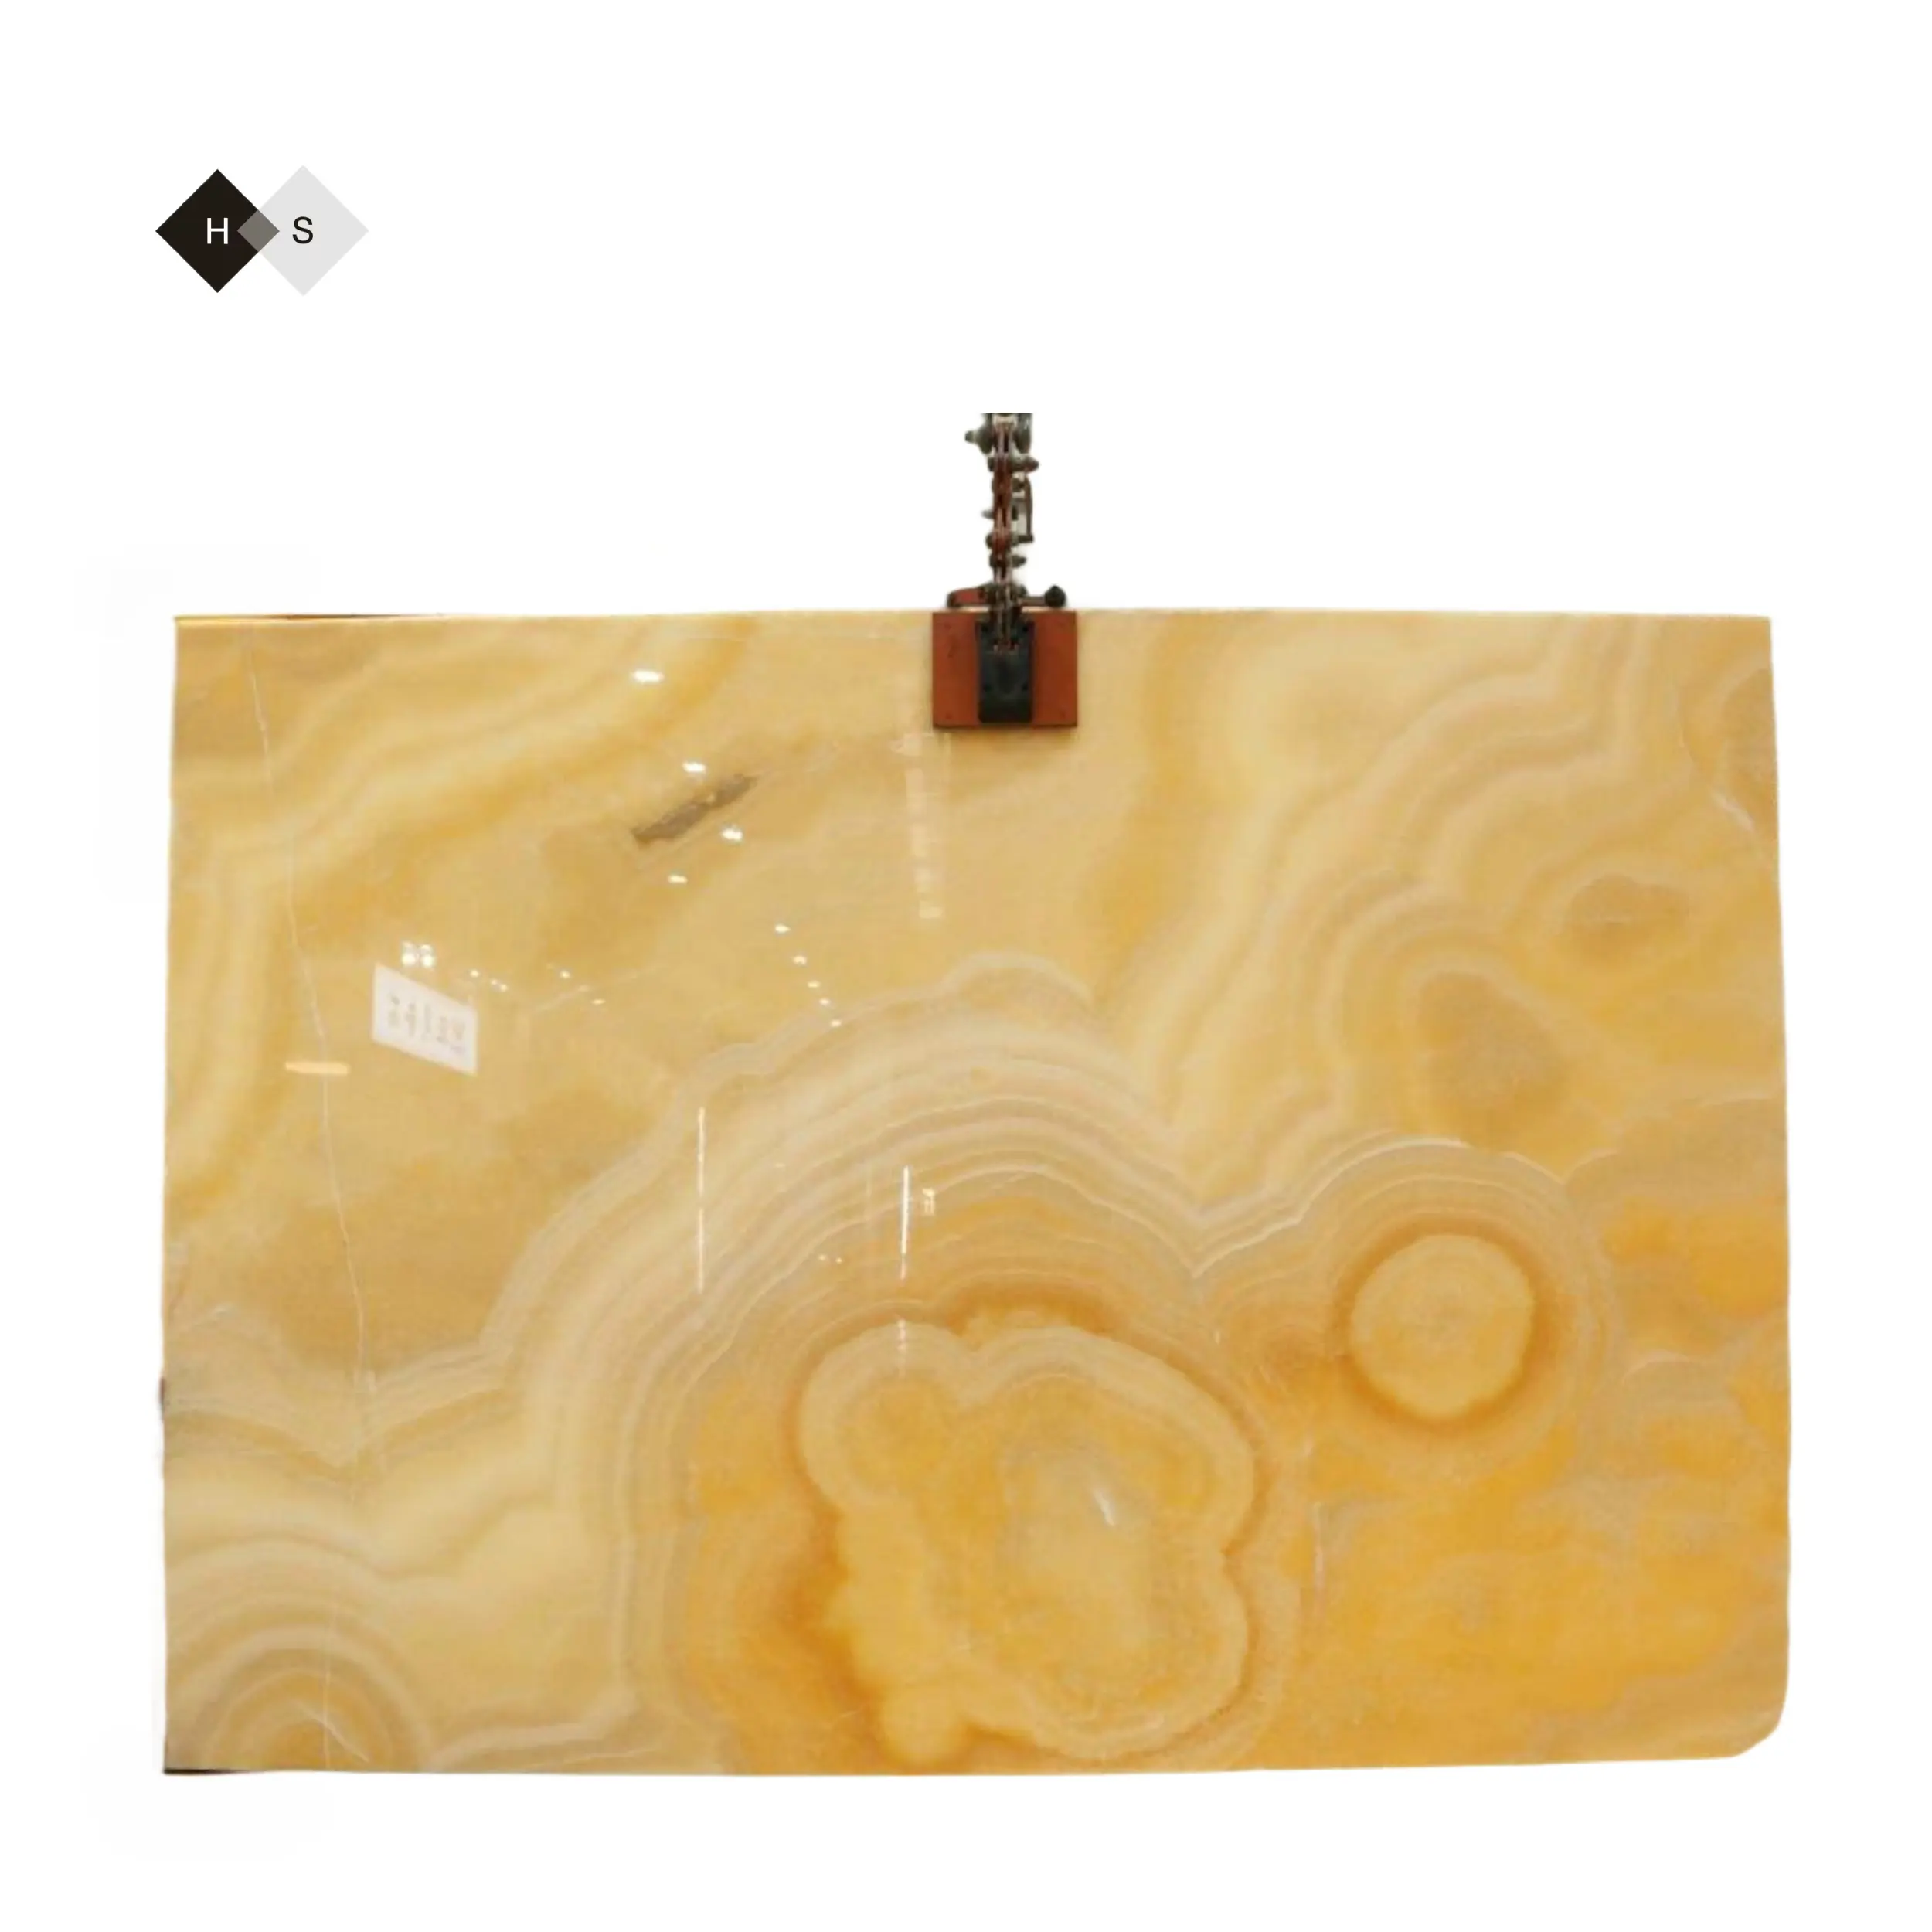 Panel dinding lampu latar lembaran onyx oranye alami dengan spesifikasi panel dinding lampu latar putih veneer ubin batu onyx Harga kompetitif